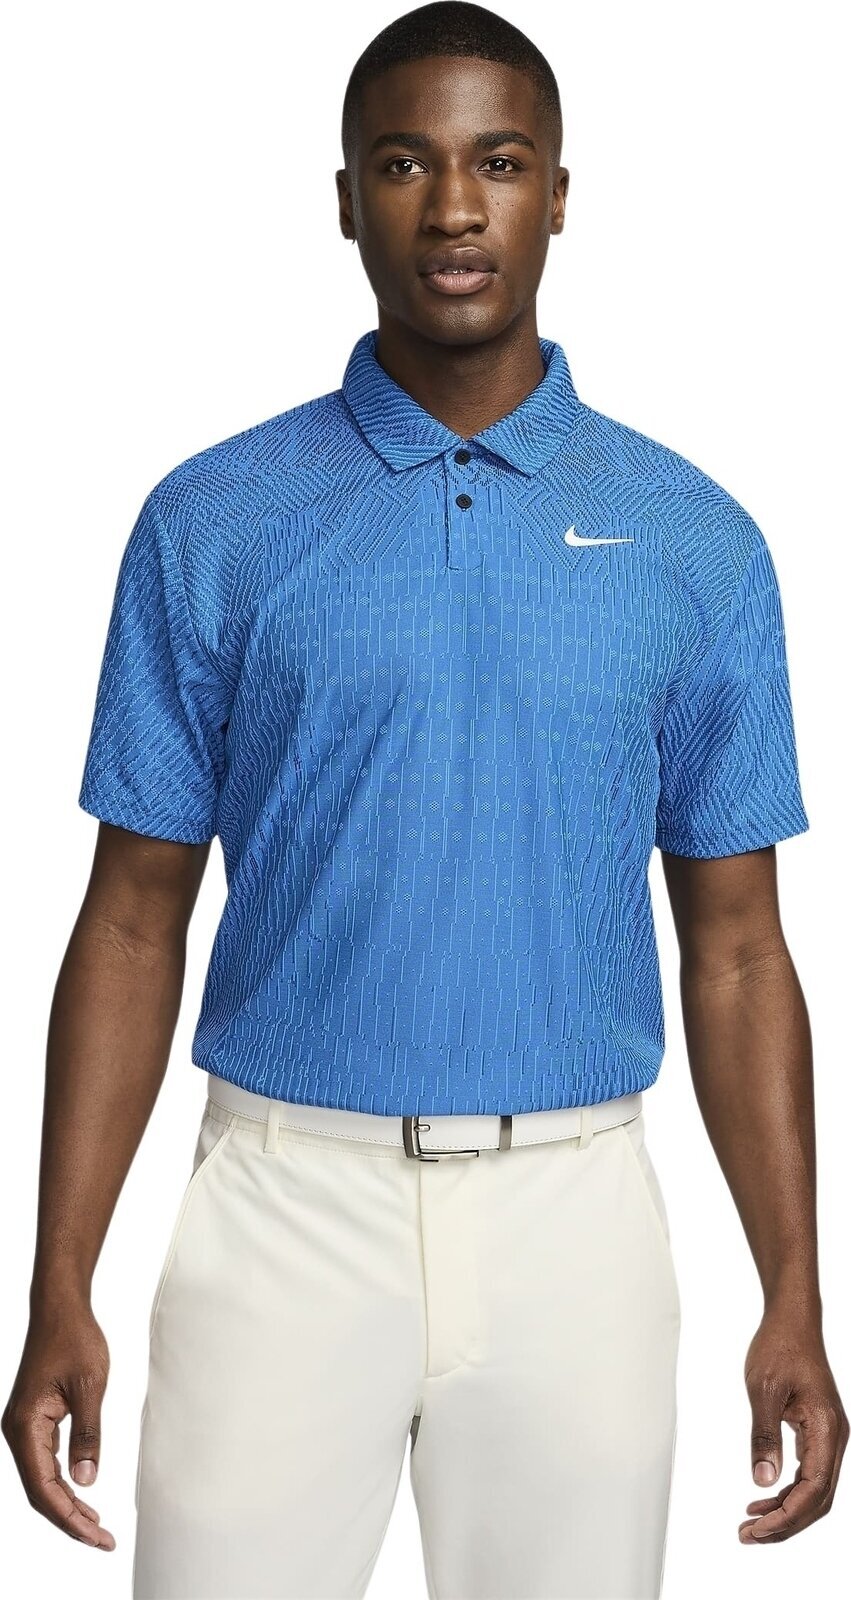 Camiseta polo Nike Dri-Fit ADV Tour Mens Polo Light Photo Blue/Court Blue/White M Camiseta polo